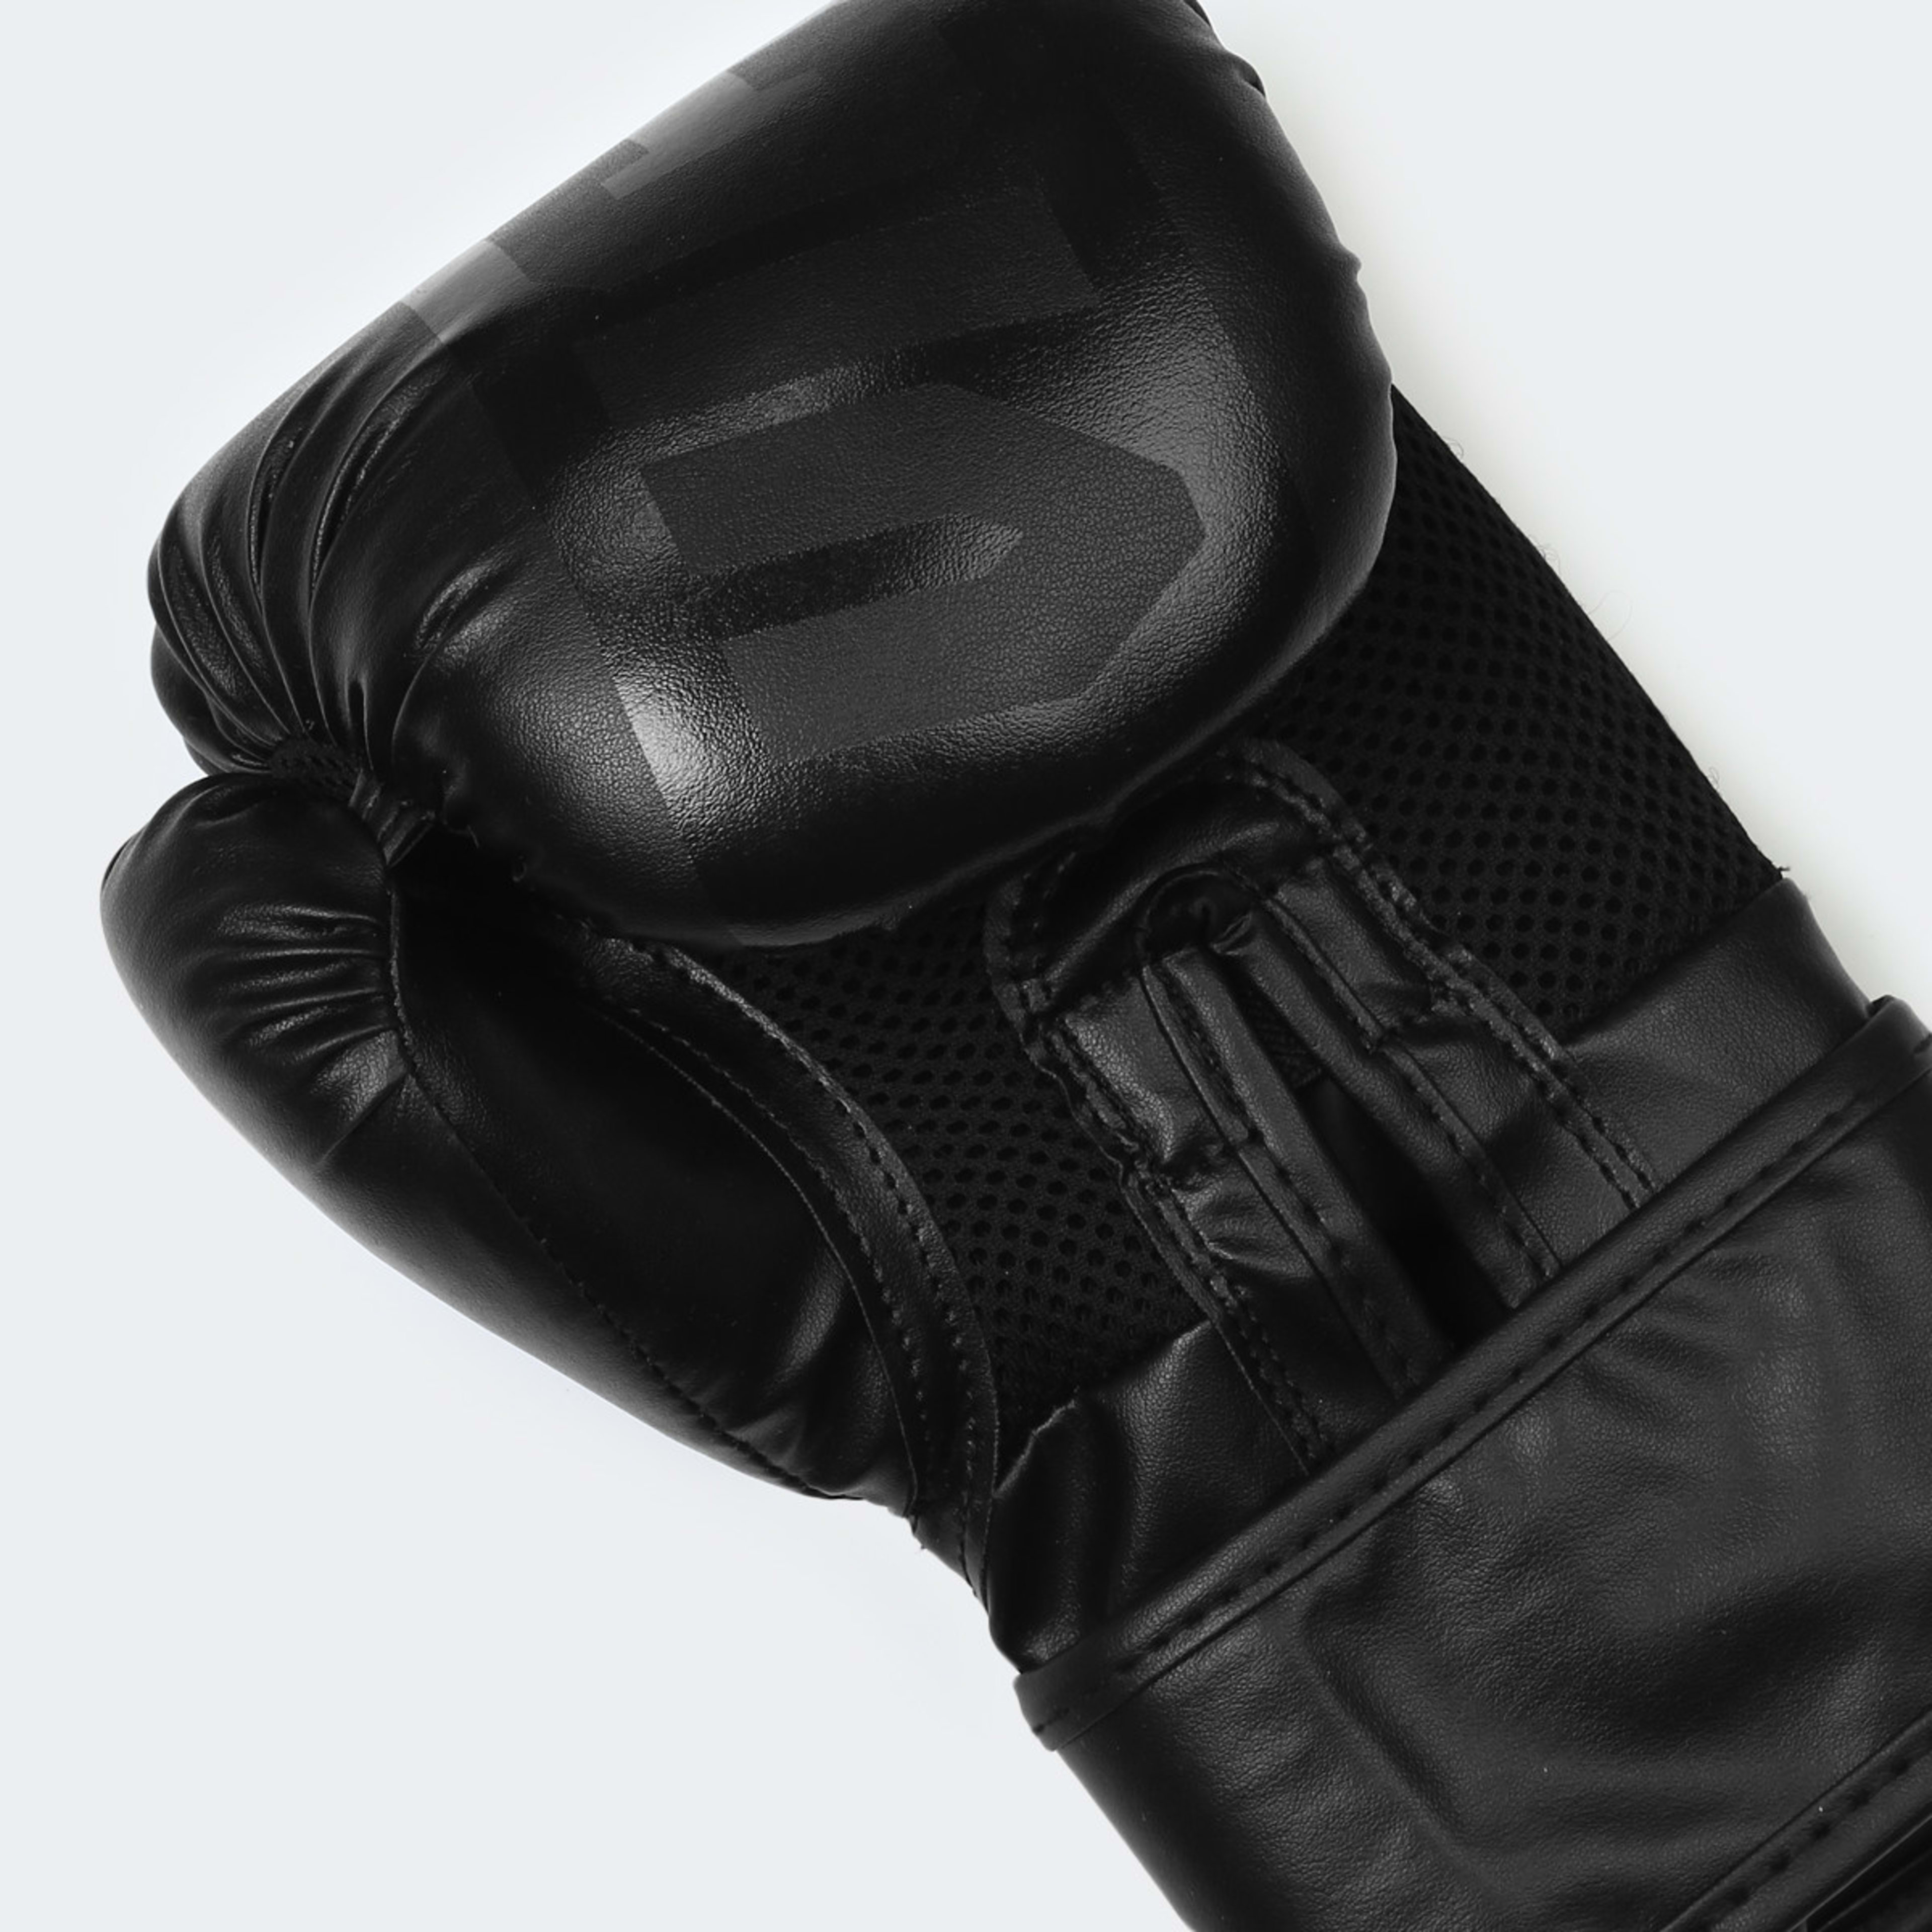 Contender Boxing Gloves - Large, Black - Kmart